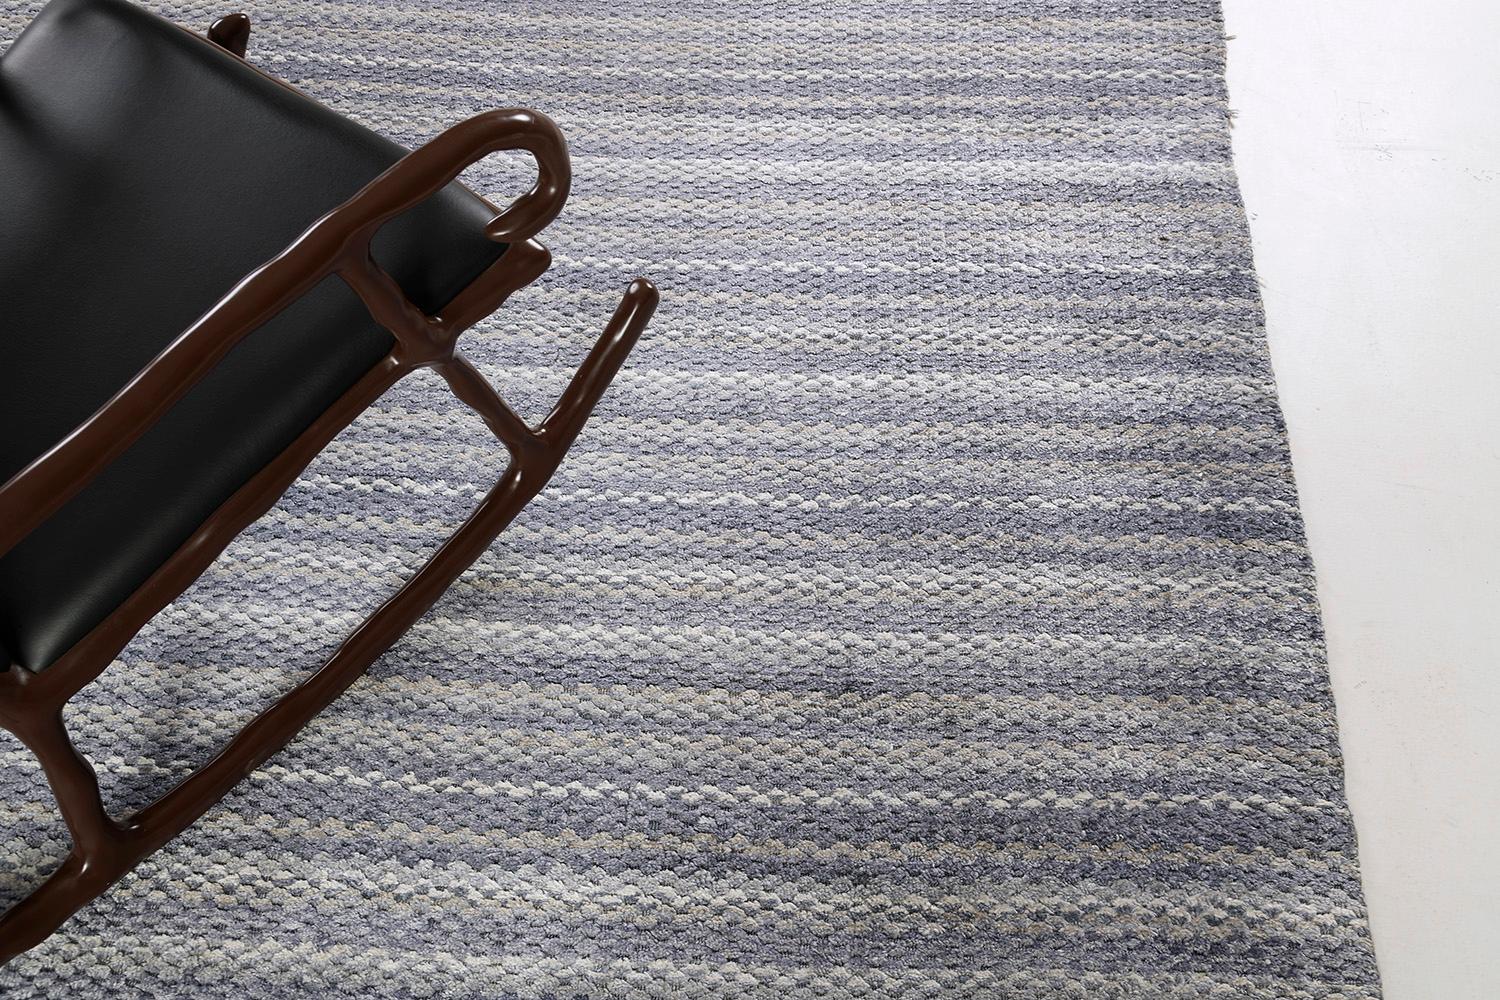 Dieser moderne Handwebteppich aus der Collection'S Luca ist stilvoll und gemütlich zugleich. Die verträumte pastellfarbene Farbpalette aus gepudertem Blau, Grau und Ecru spielt eine wesentliche Rolle bei der Erzielung dieser subtilen Raffinesse, die